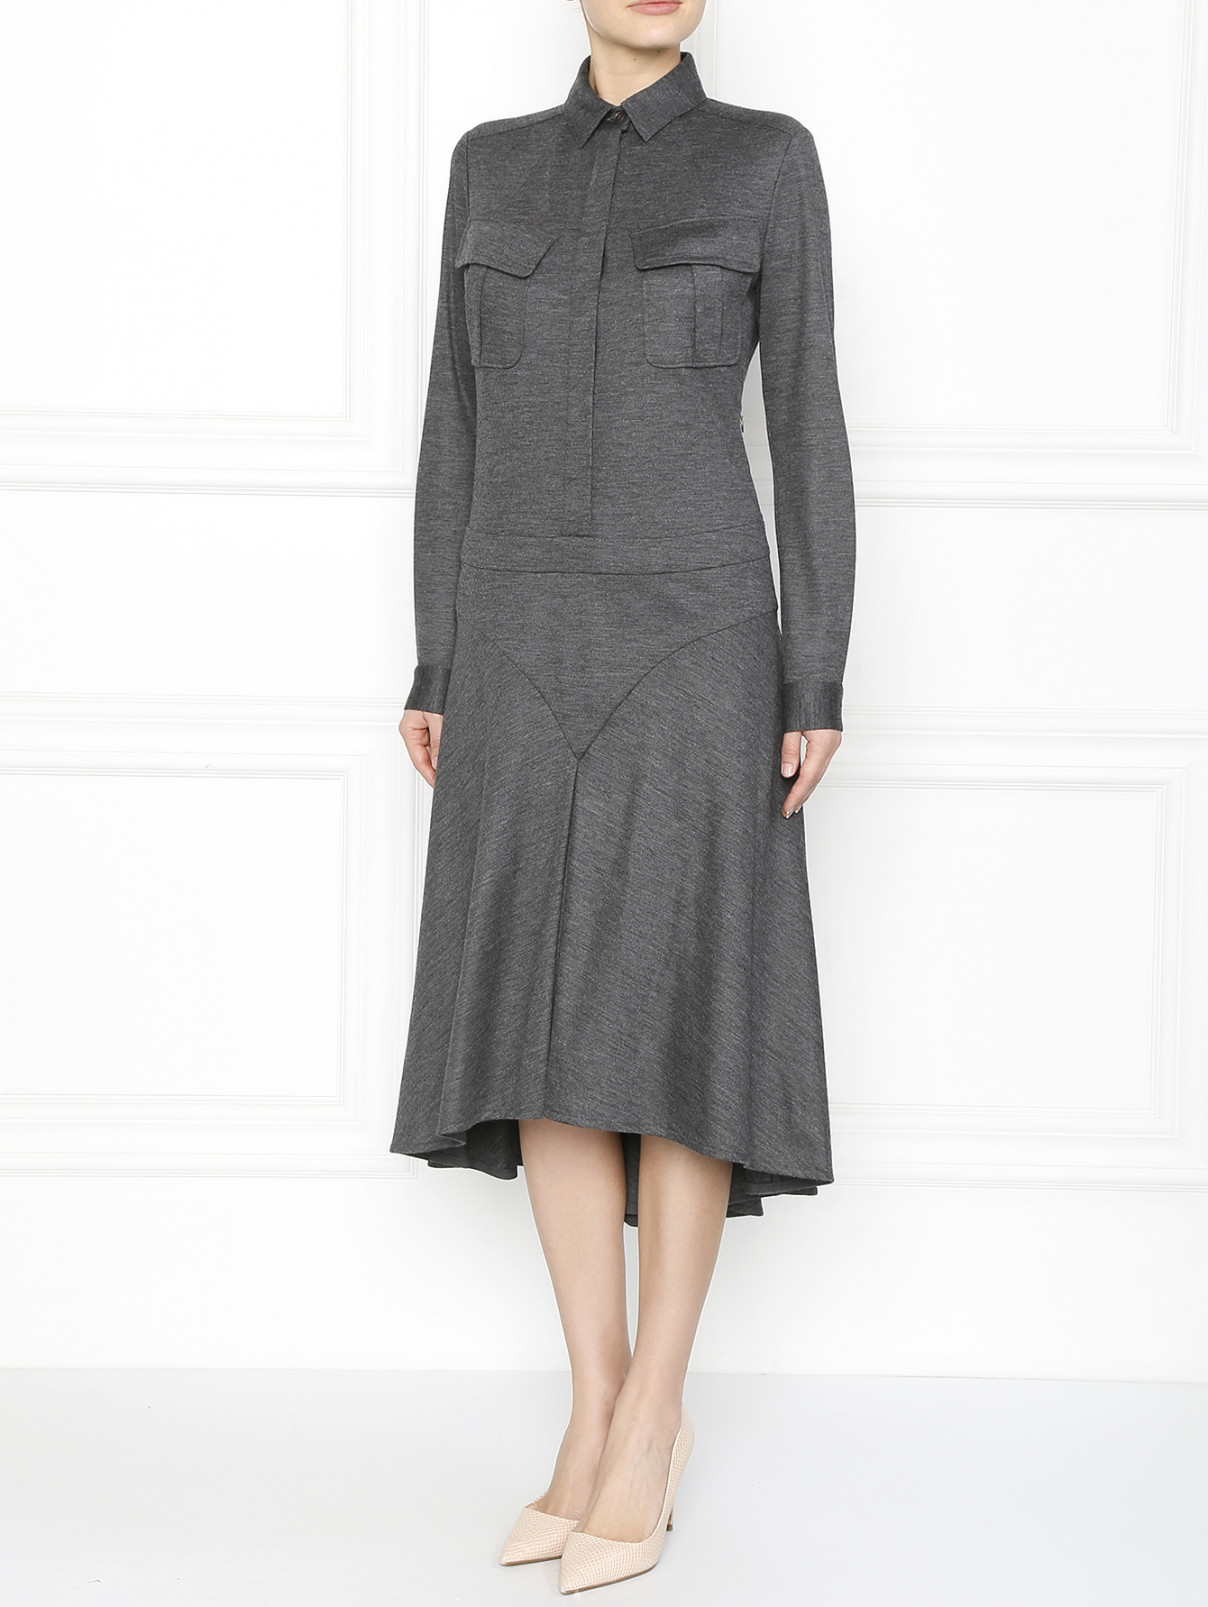 Трикотажное платье с накладными карманами Barbara Bui  –  Модель Общий вид  – Цвет:  Серый